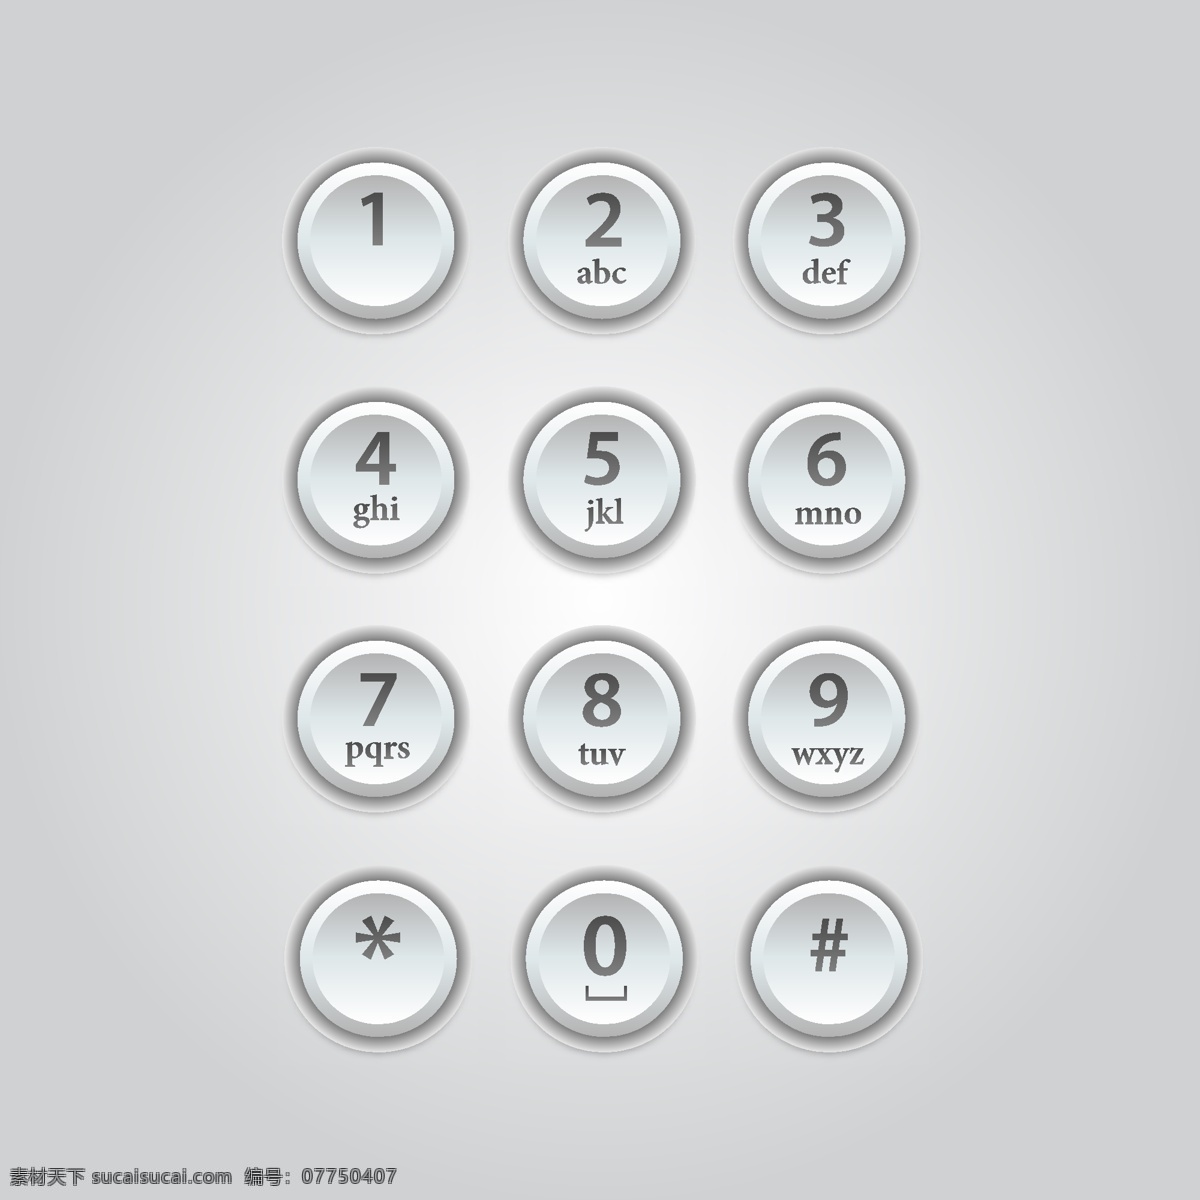 手机拨号键 拨号键 手机键盘 金属质感 数字 按键 阿拉伯数字 金质键盘 手机配件 web 界面设计 图标按钮